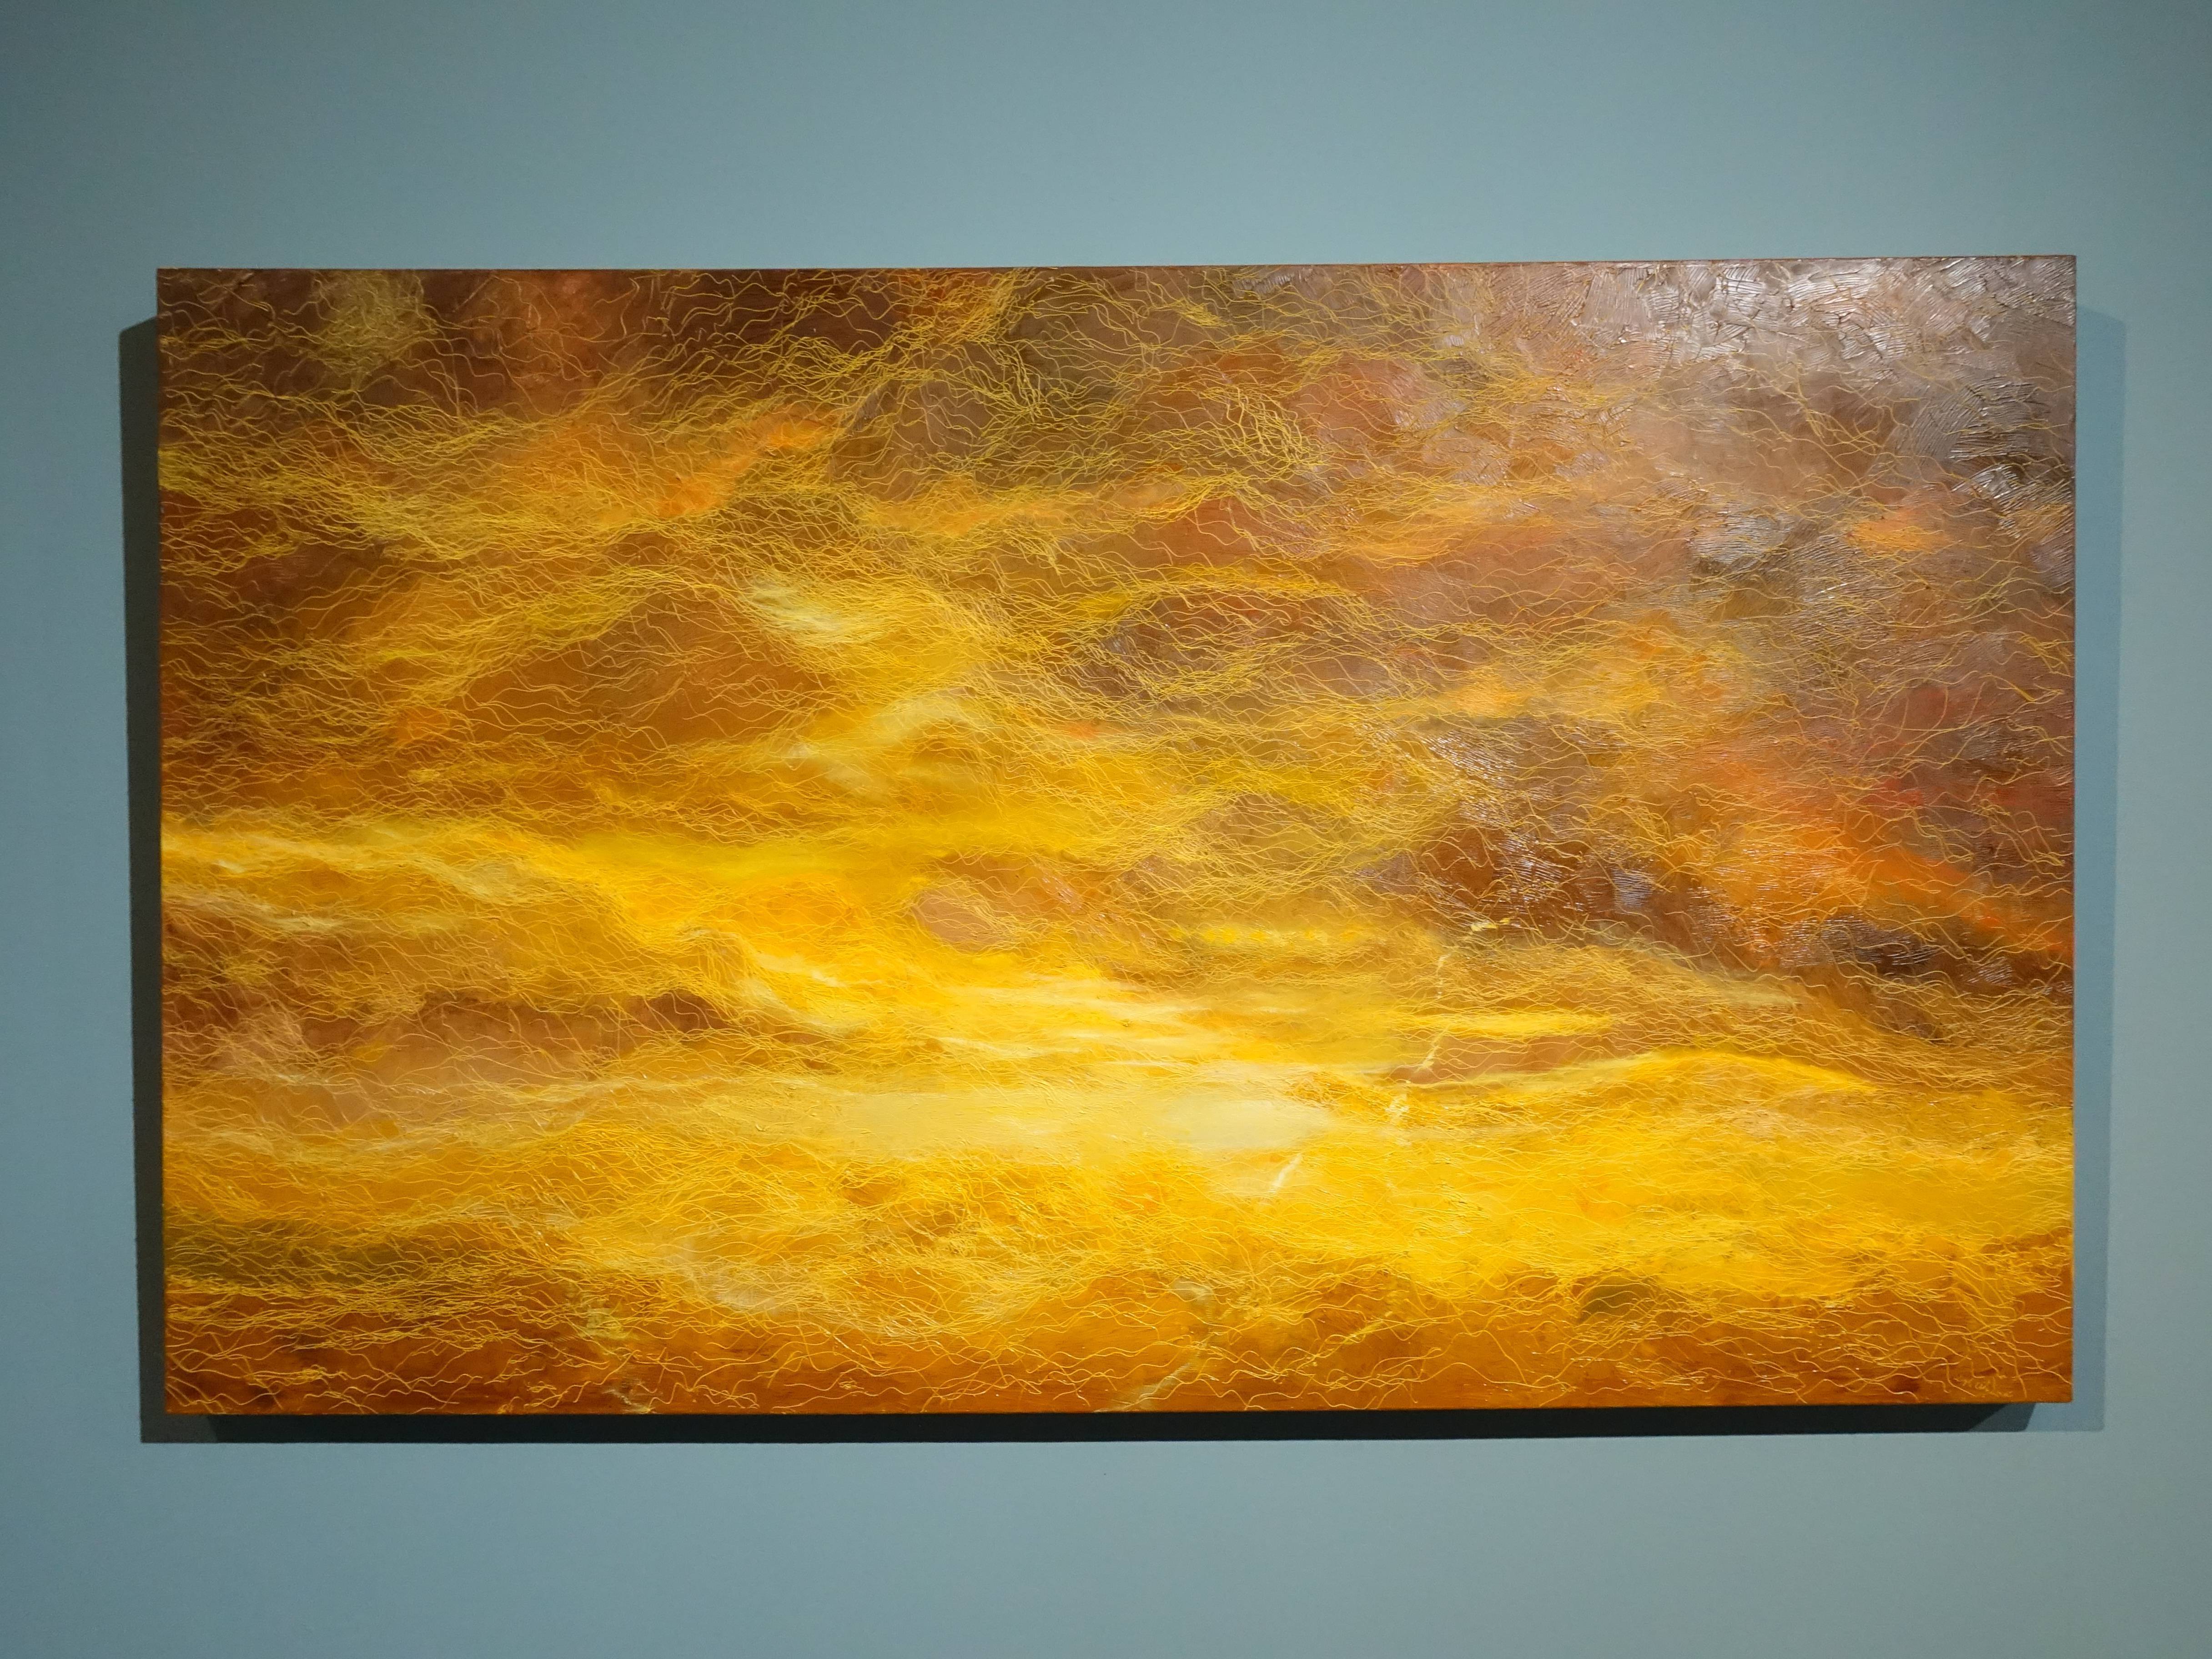 鄭麗雲，《晨曦》，97 x 162 cm，油彩、蔴布，2016。